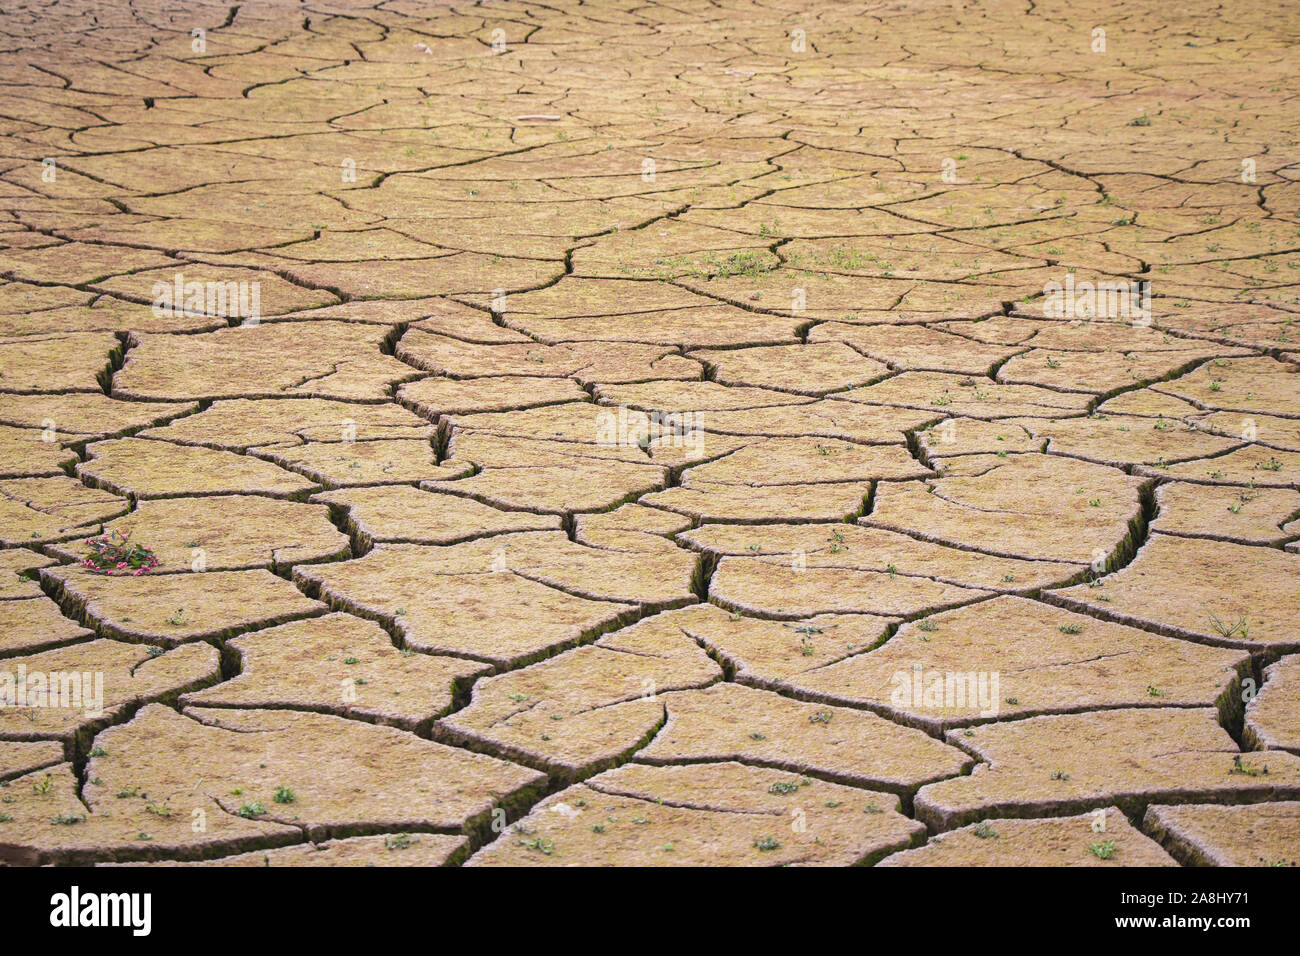 Désert avec de grandes fissures causées par une grave sécheresse. Conséquences du réchauffement climatique. Banque D'Images